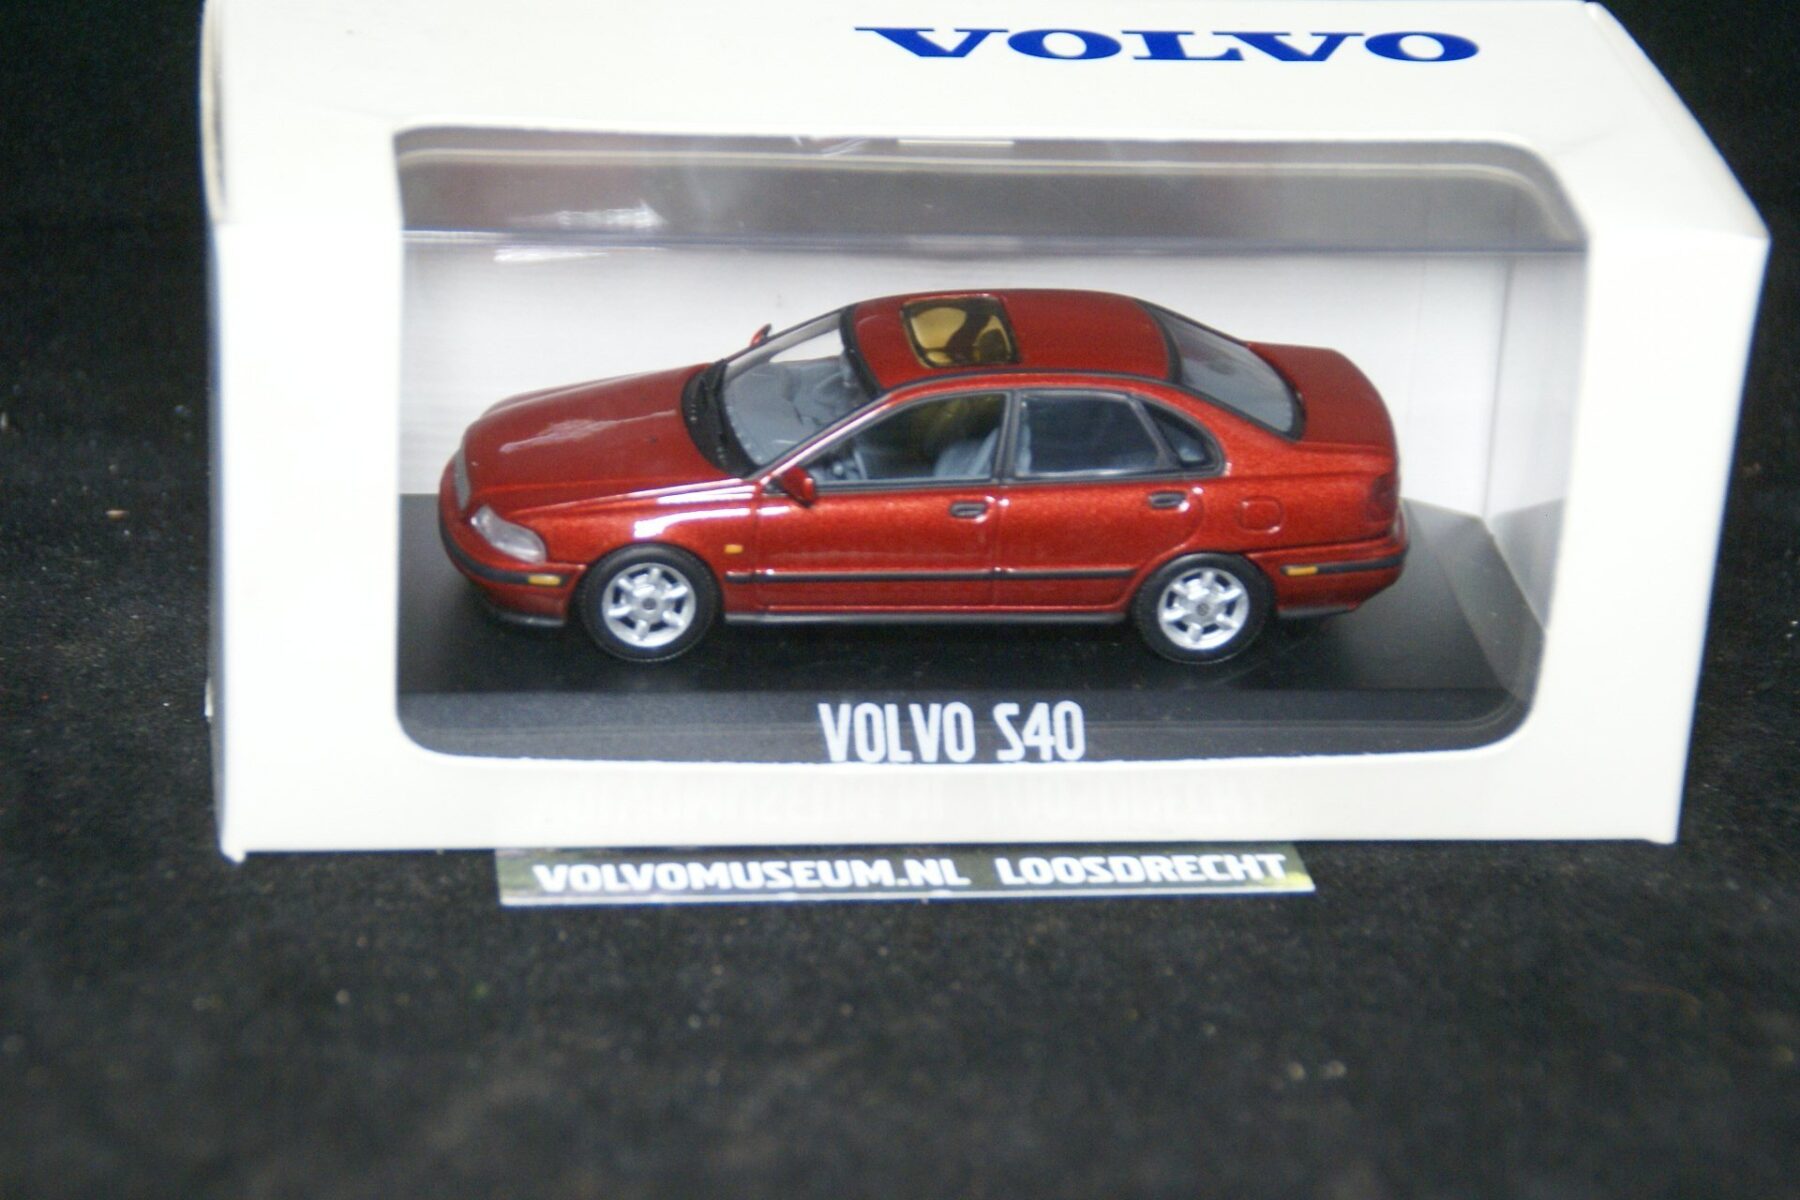 DSC03233 miniatuur Volvo S40 rood 1op43 Volvo MB